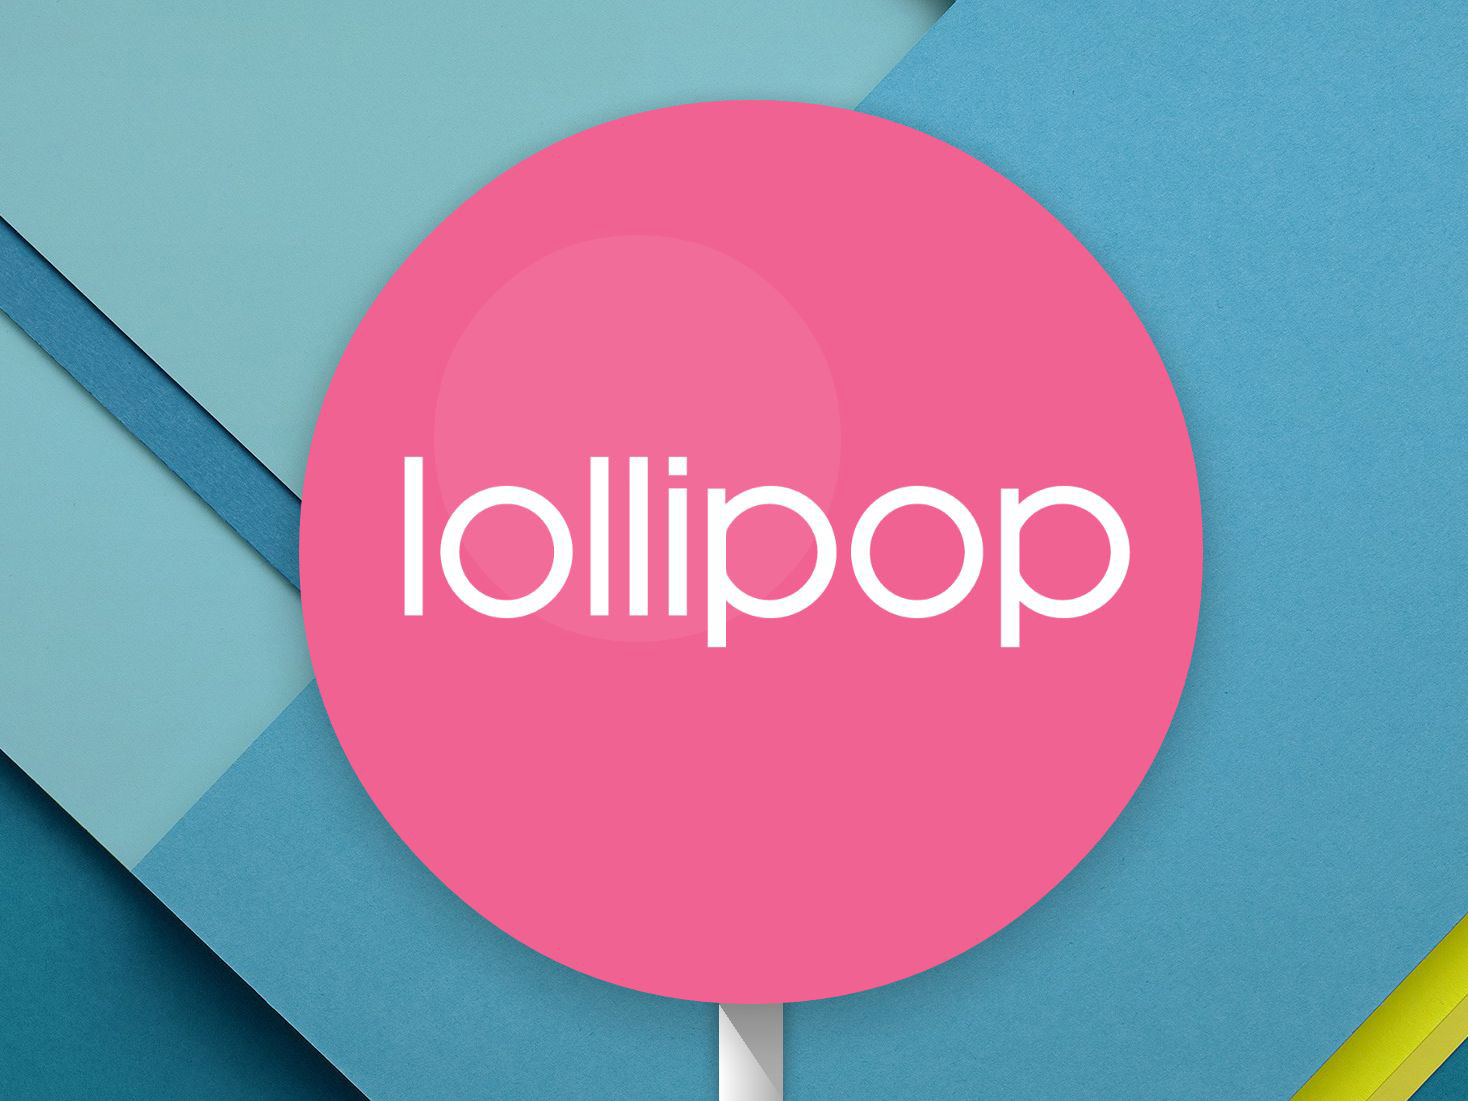 Veröffentlichungsdatum und Funktionen von Android Lollipop: Mehr Telefone erhalten Android 5.0-Update.